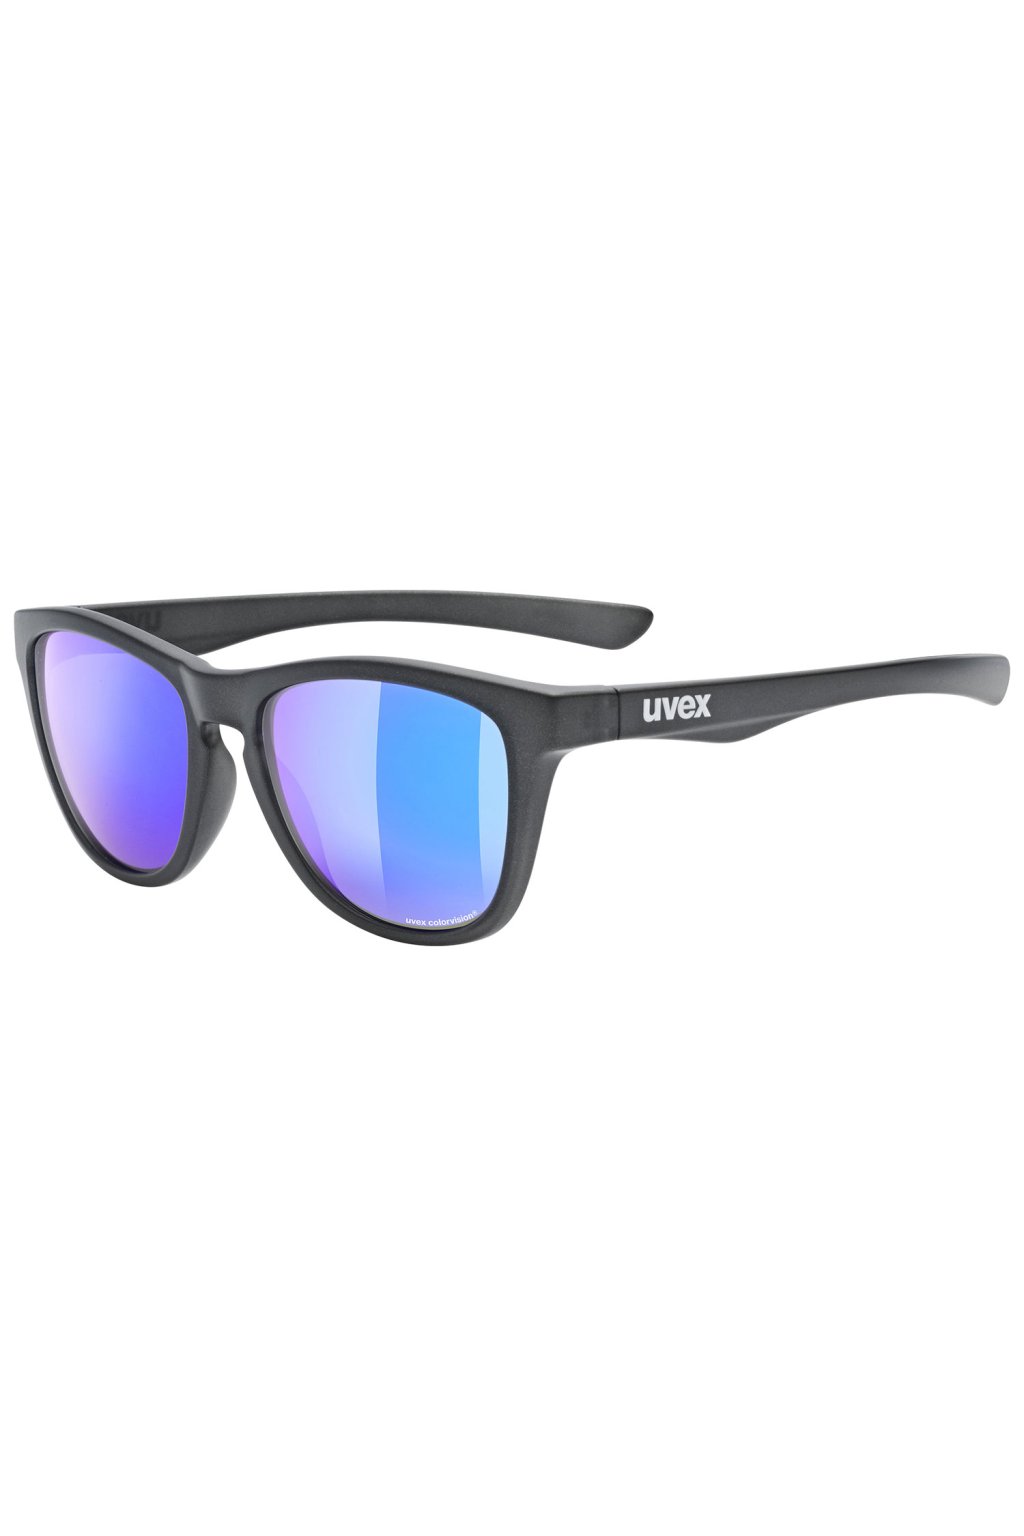 Lifestylové sluneční brýle UVEX LGL 48 CV, ANTHRACITE MAT